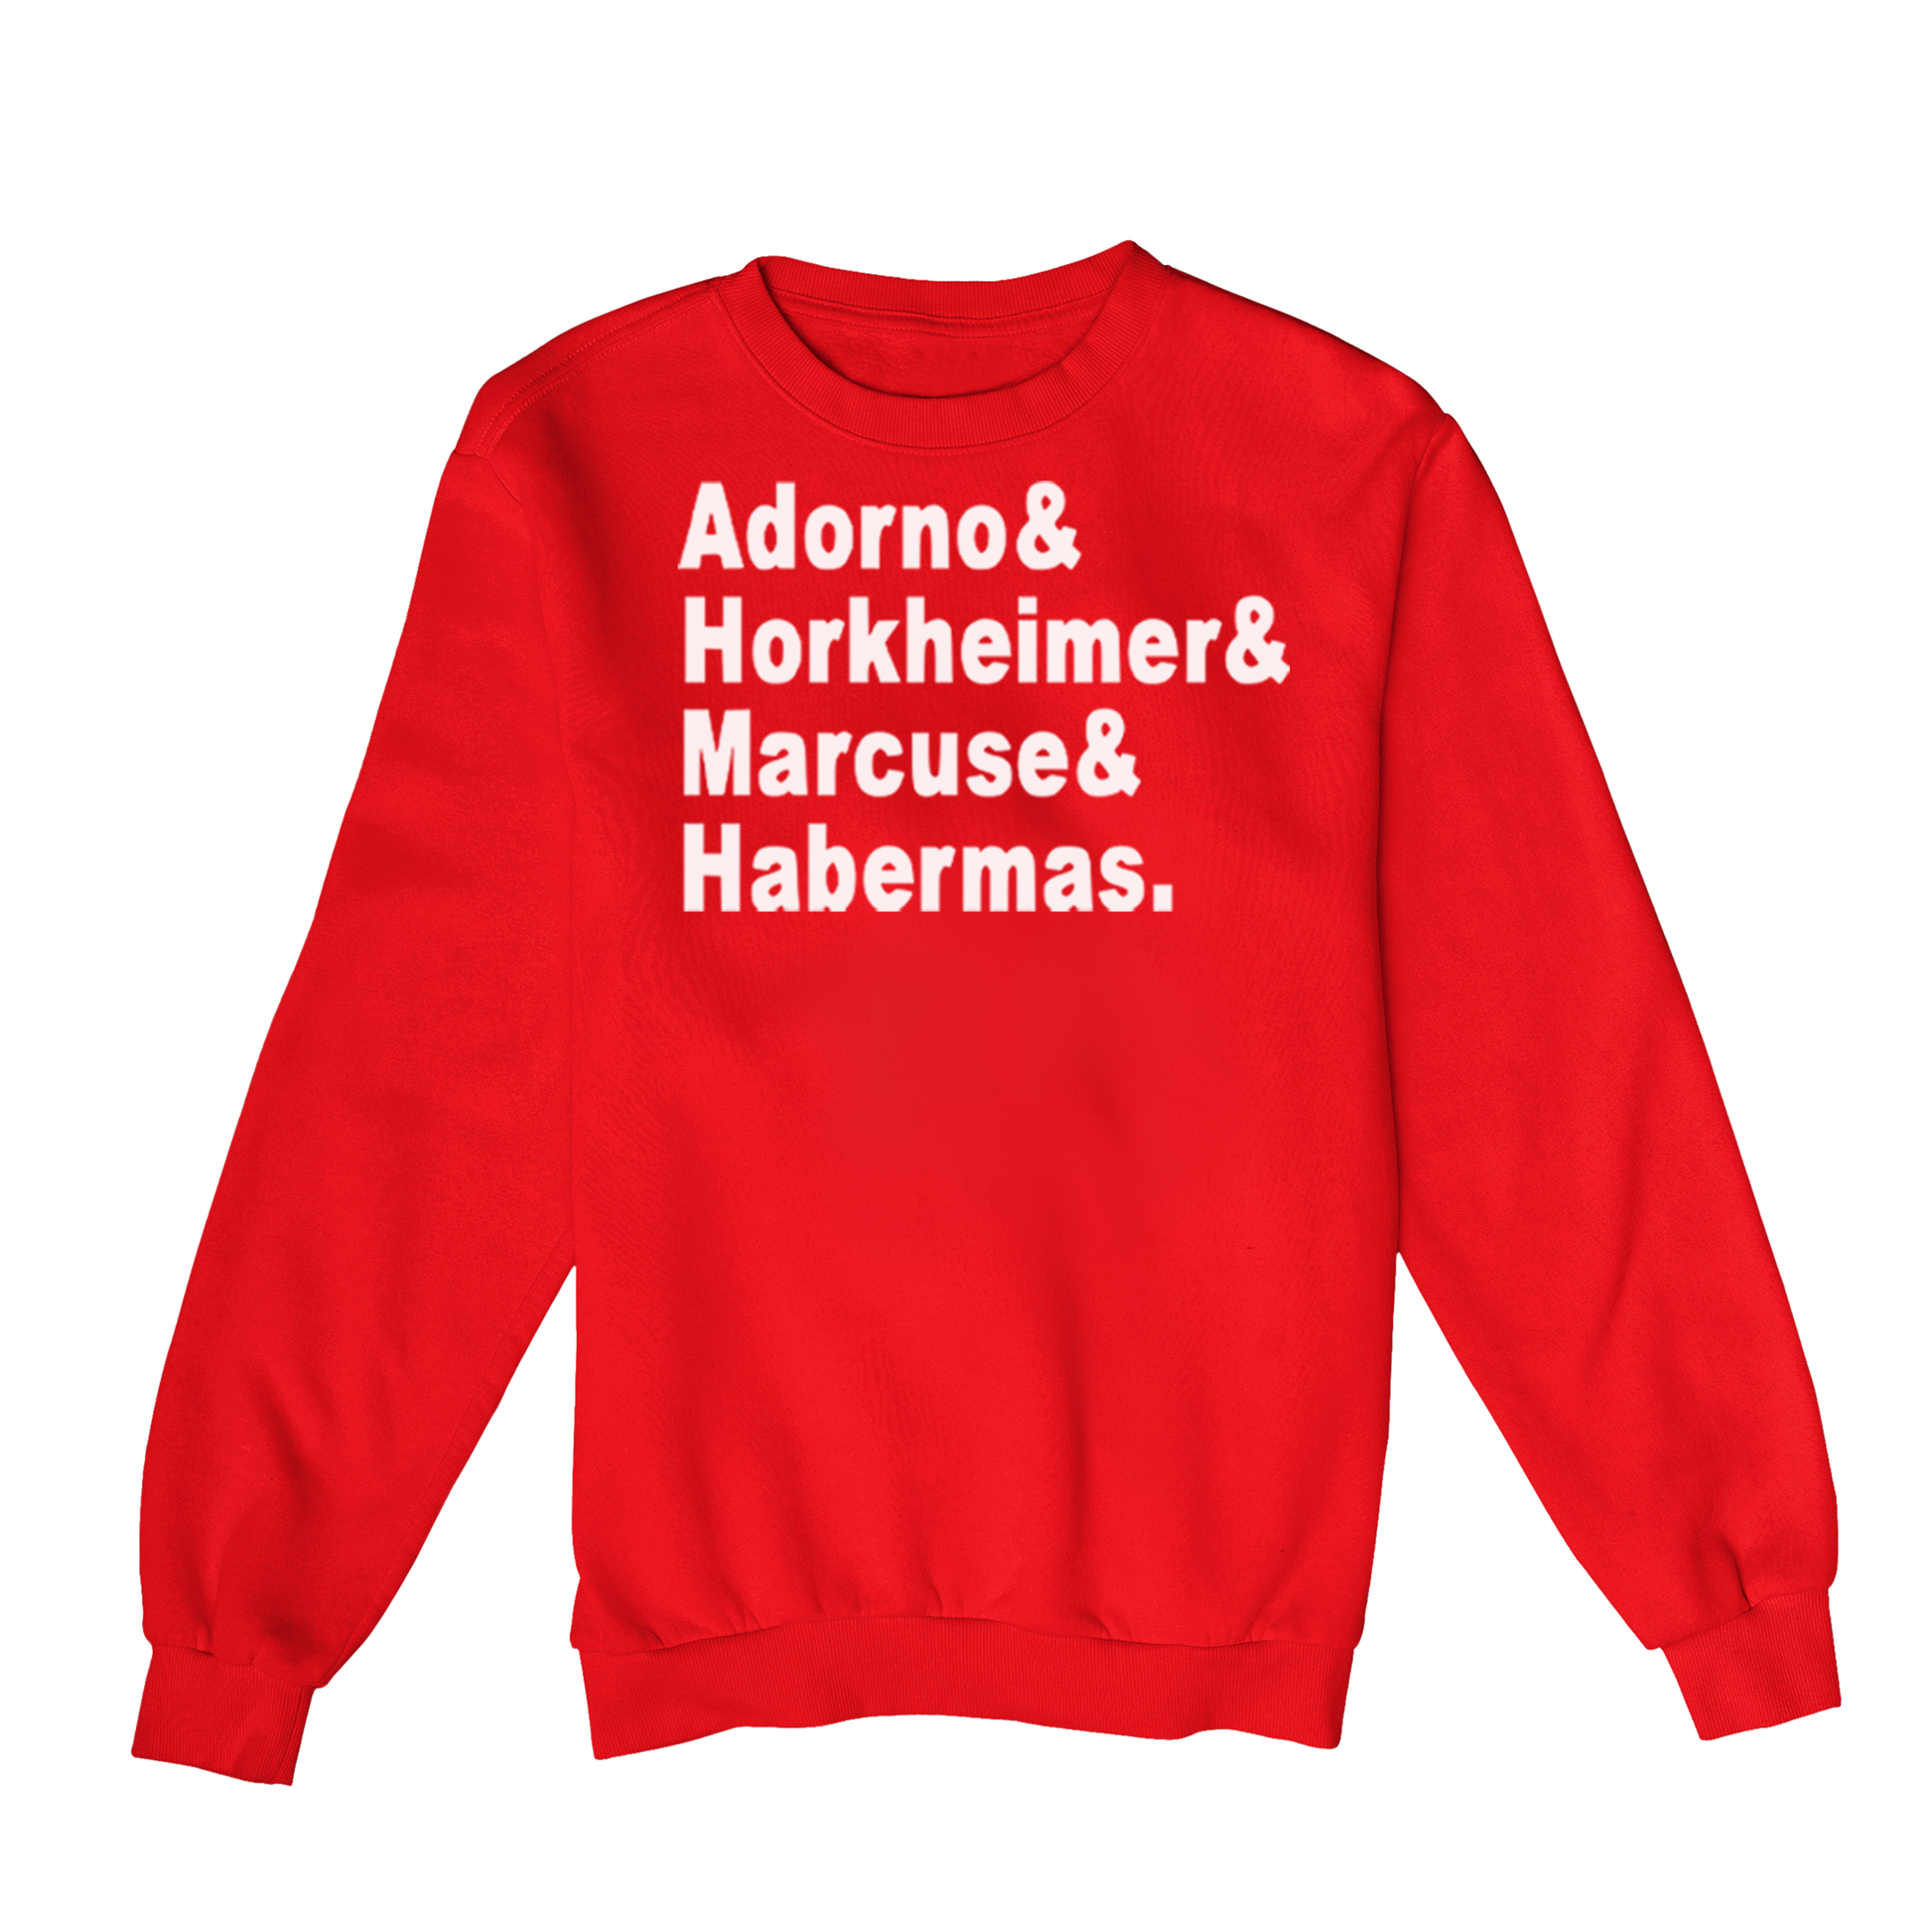 Moletom Estampa: Texto com um nome em cada linha: Adorno& Horkheimer& Marcuse& Habermas.